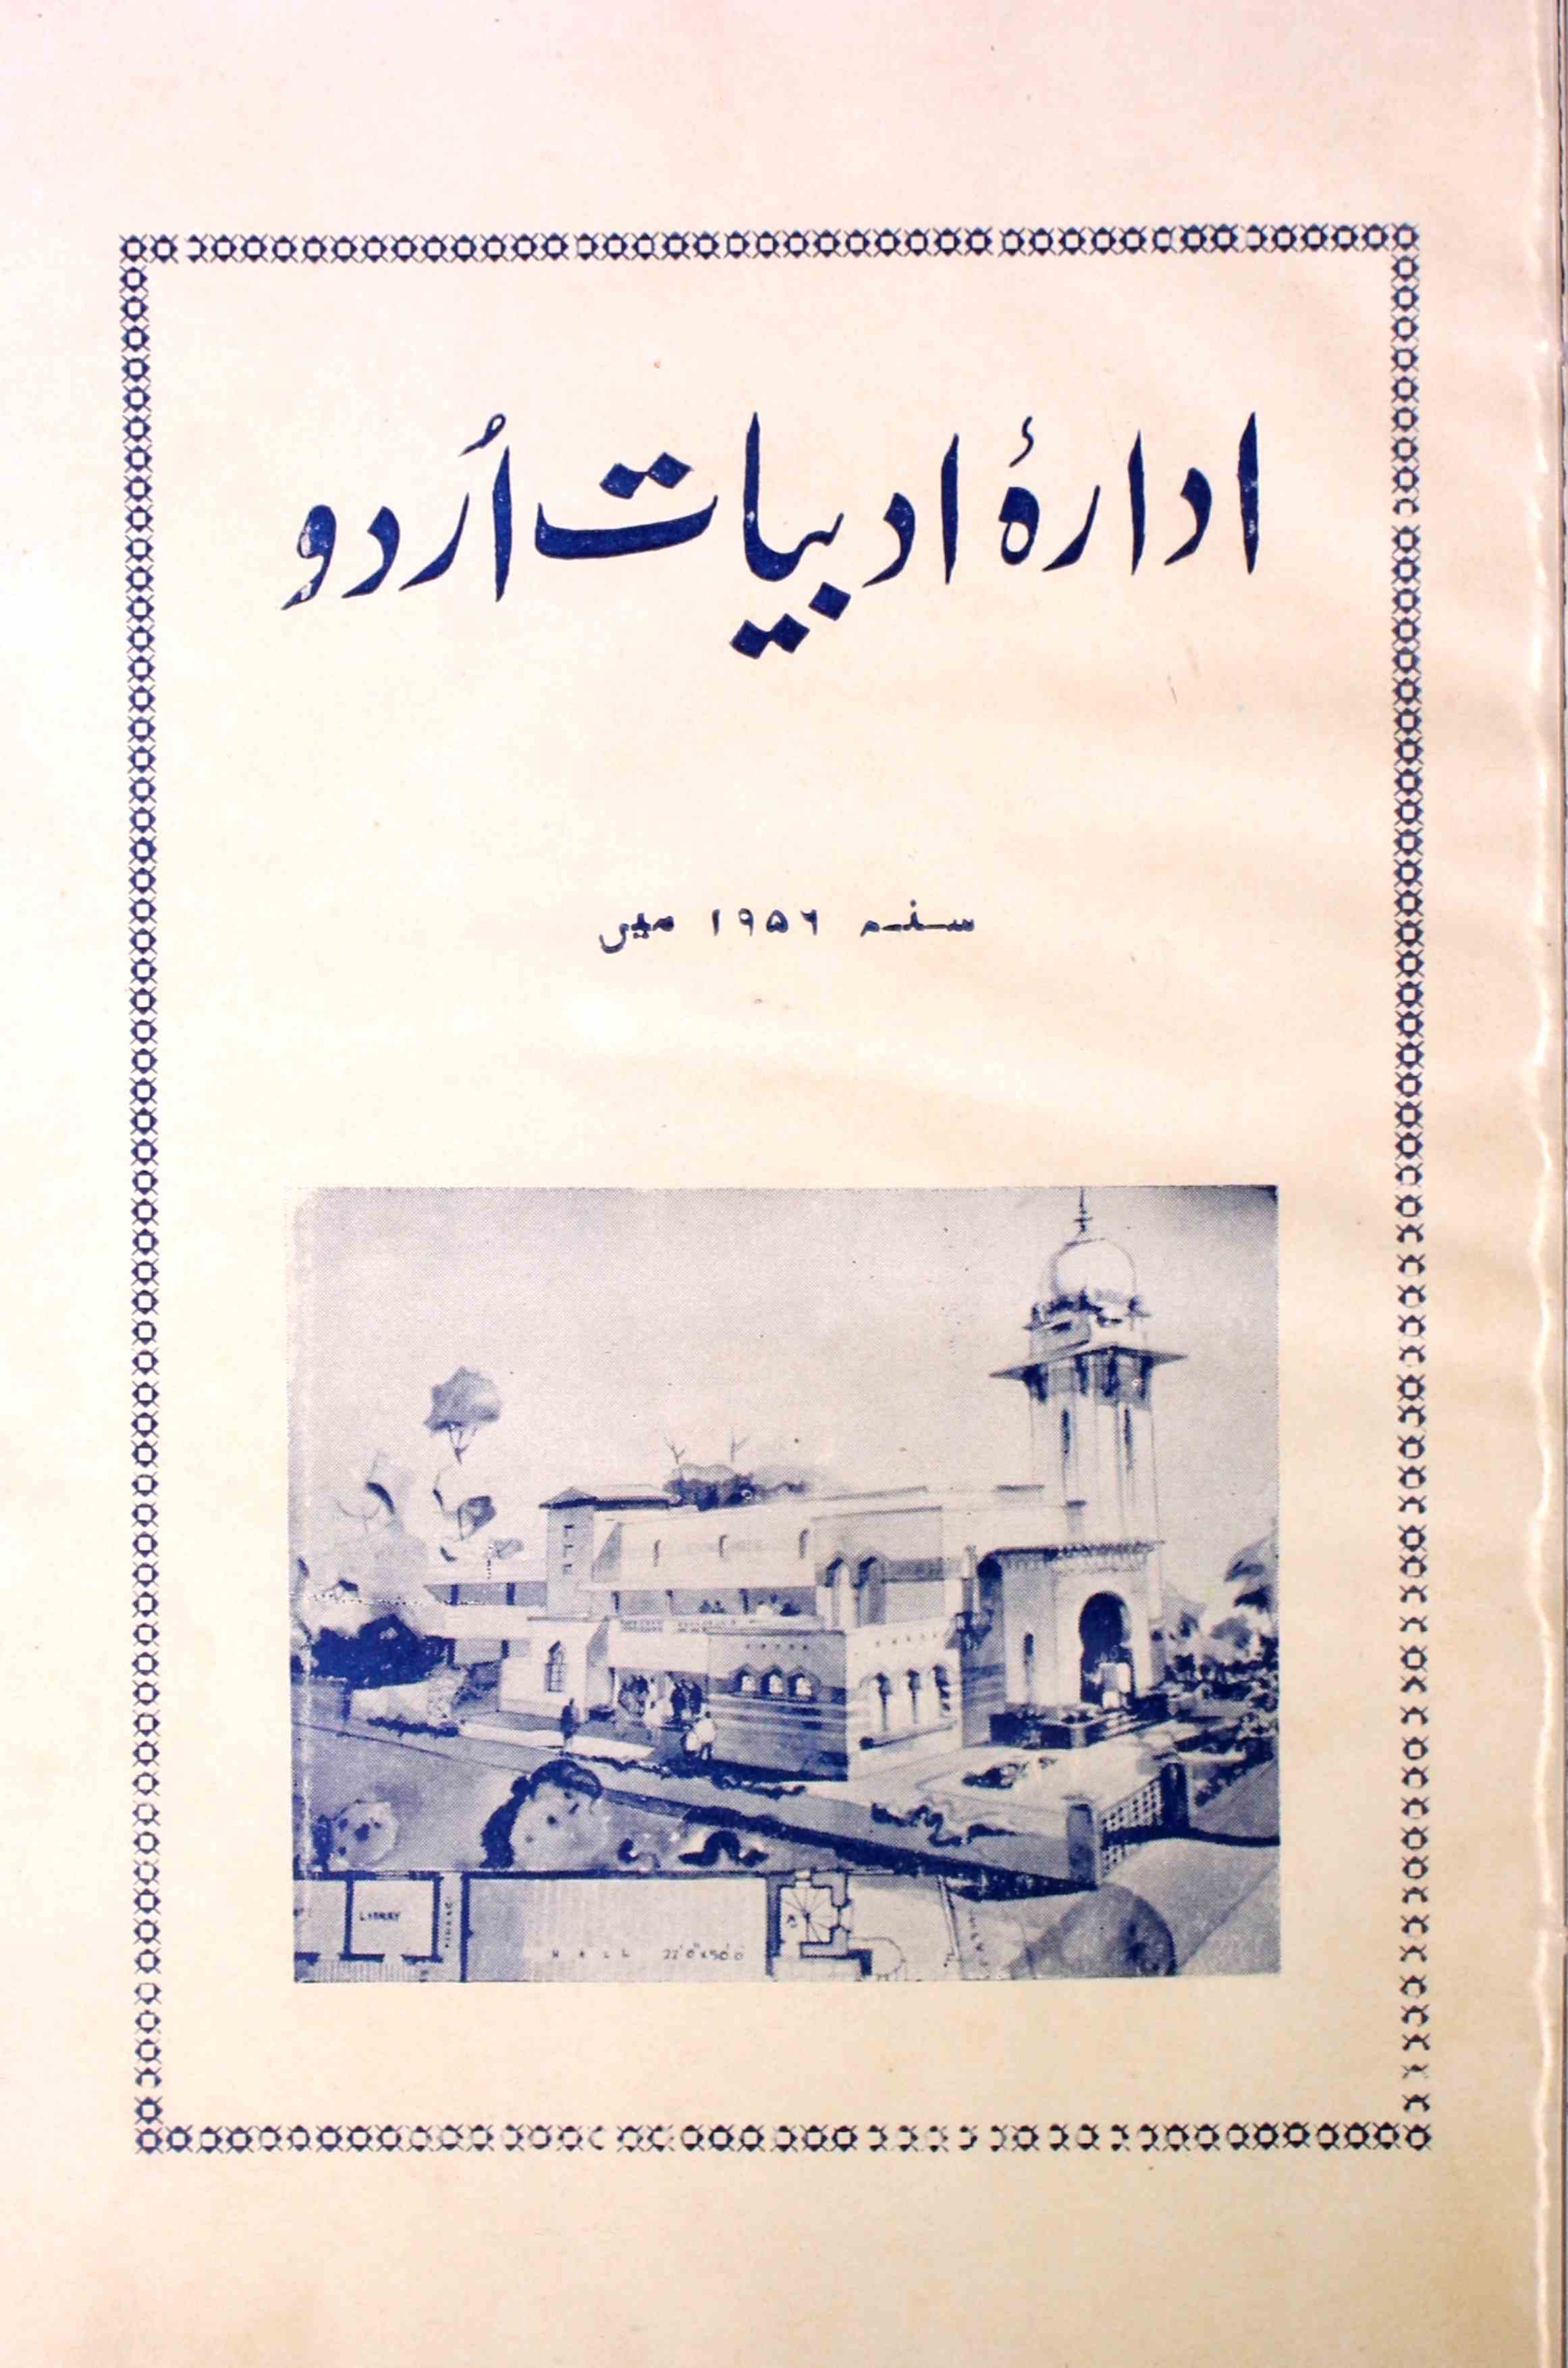 ادارہ ادبیات اردو 1956 میں